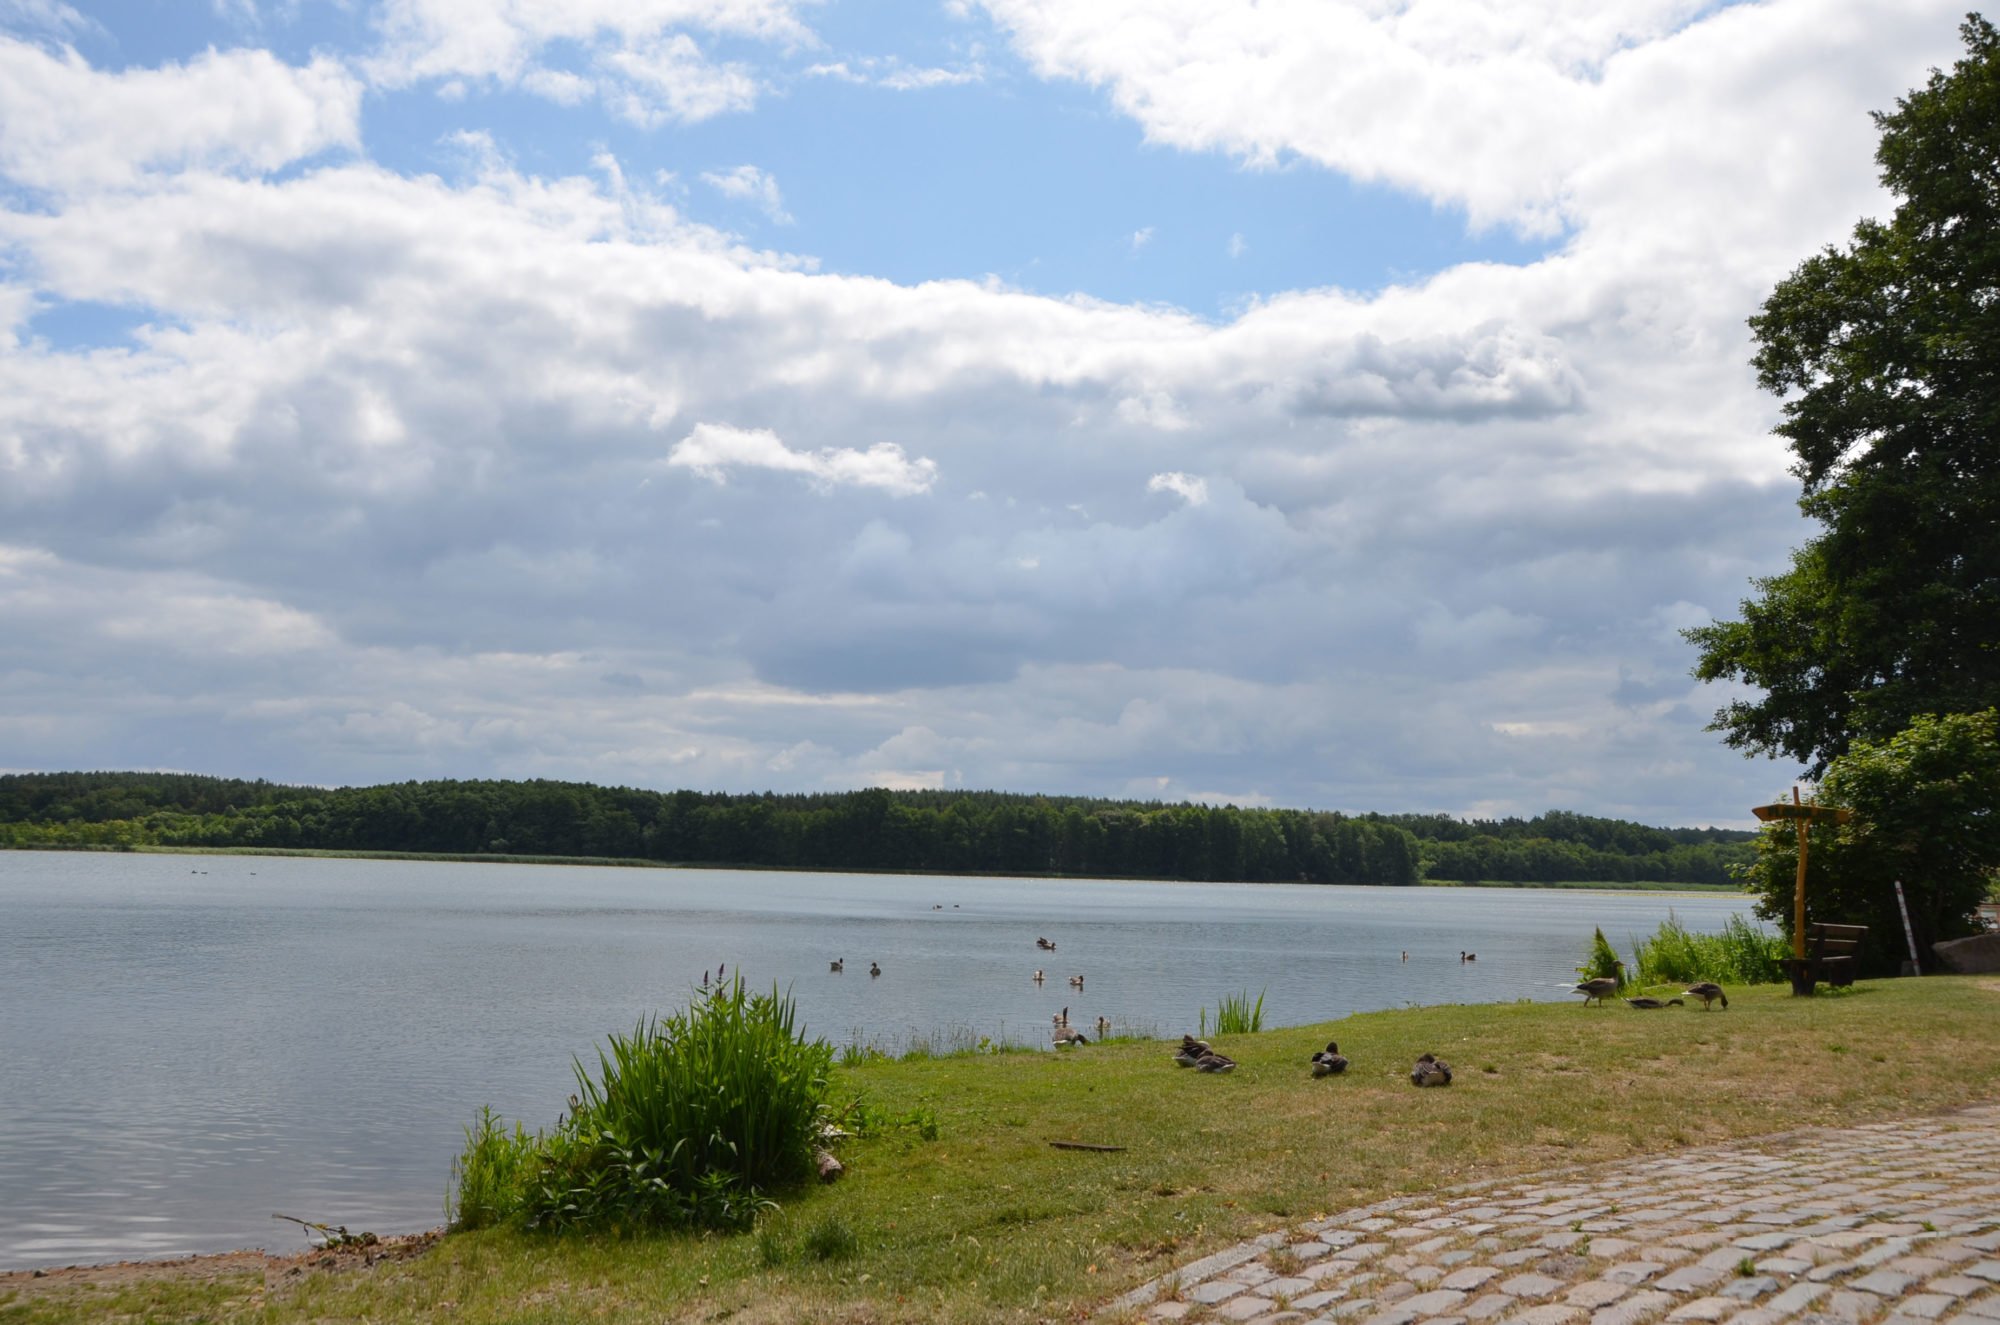 Im Vordergrund ein Weg aus Kopfsteinpflaster, dahinter Wiese, auf der Enten und Gänse sitzen und stehen. Dahinter der See und darüber blauer Himmel mit Wolken.